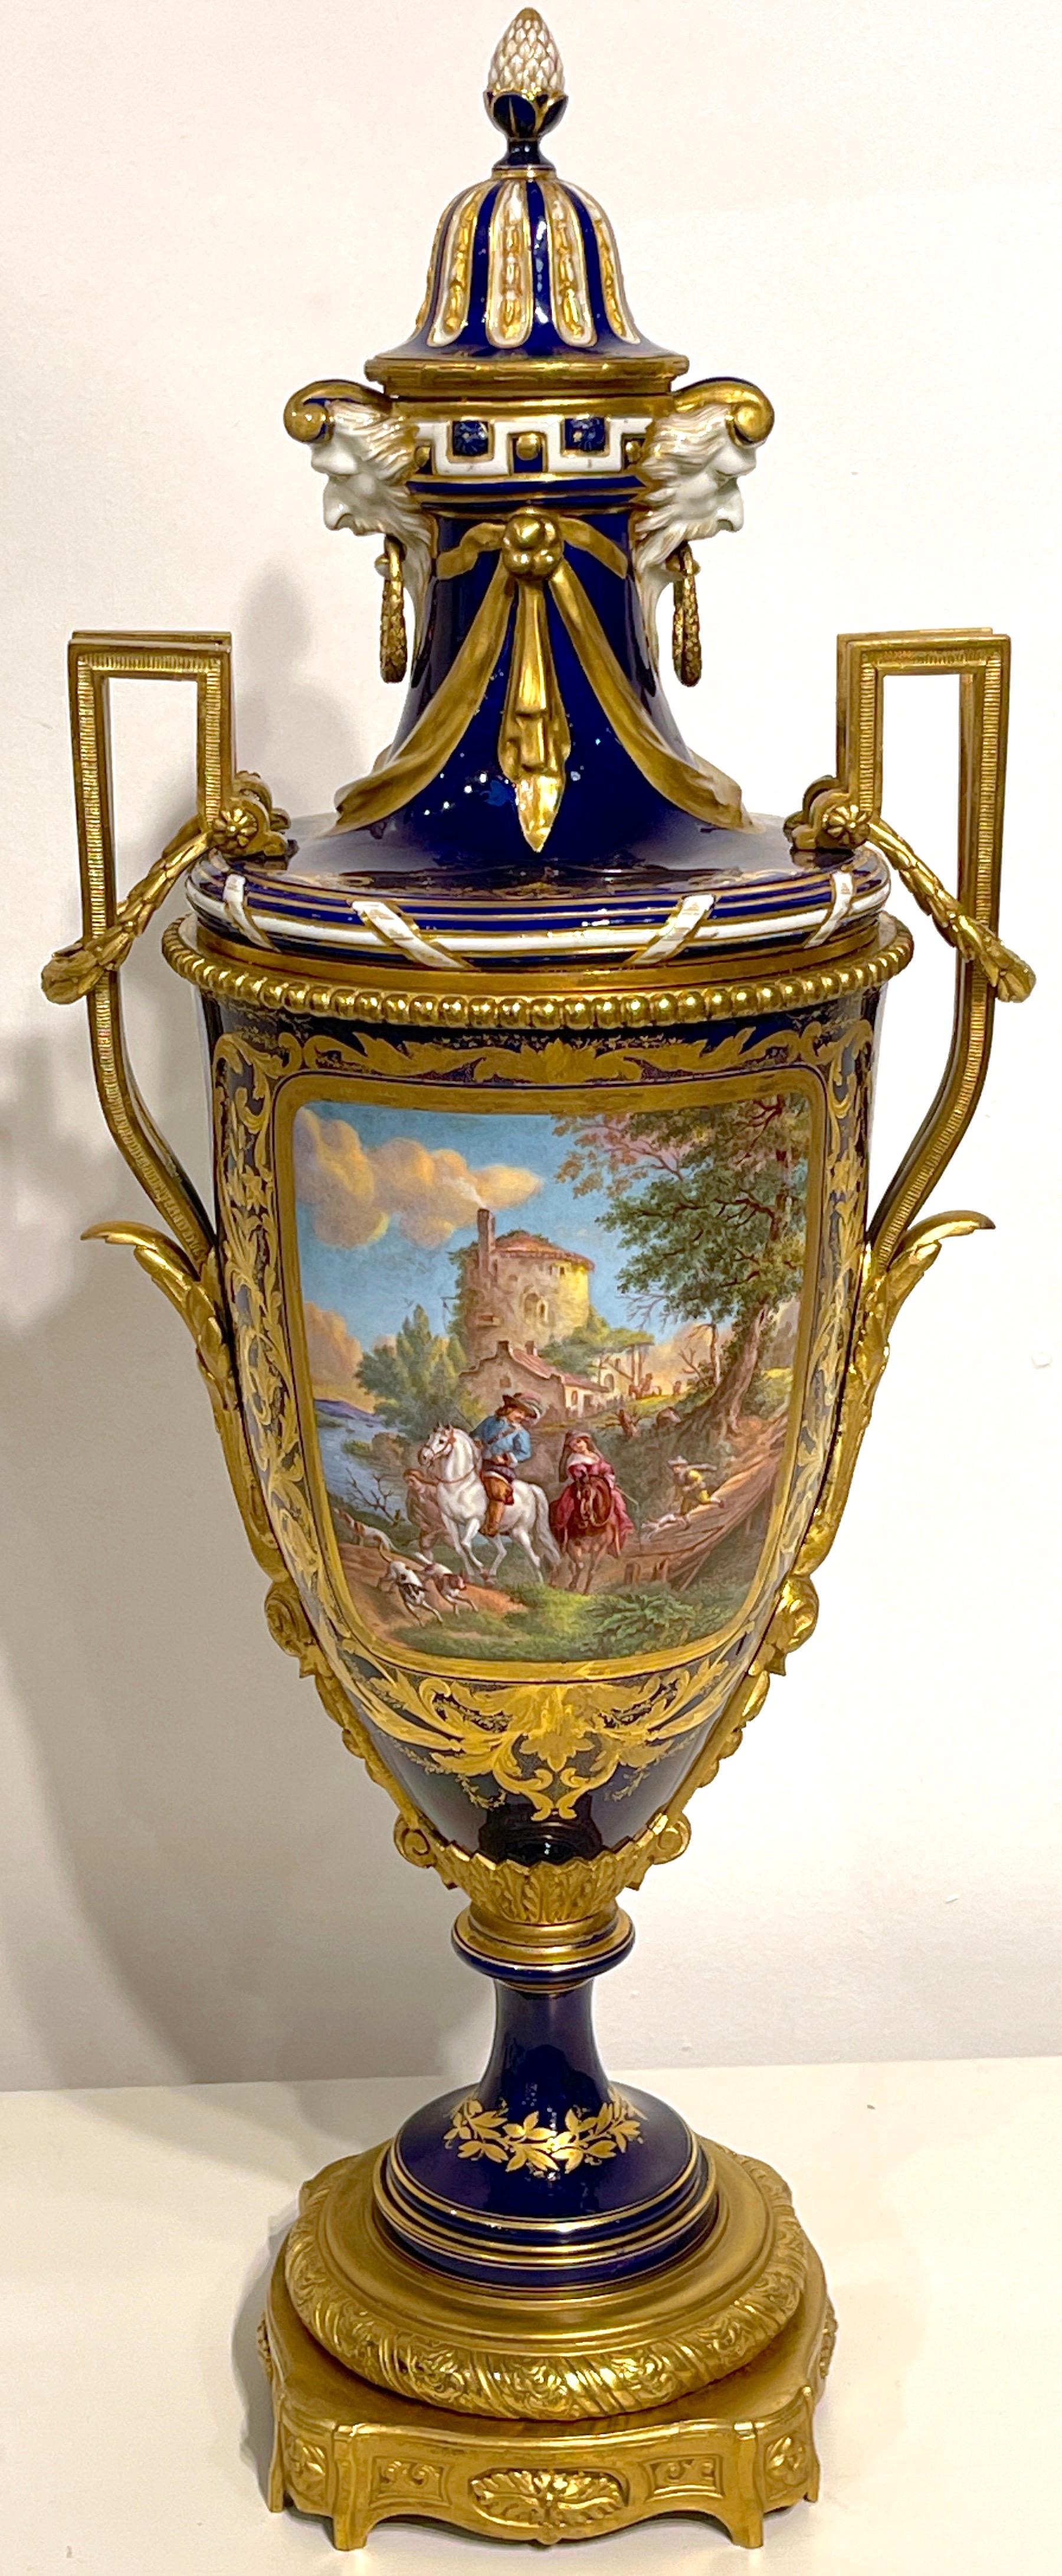 Vase et couvercle à scène de chasse Louis XIII en cobalt et bronze doré, Sèvres, 19e siècle 
France, vers 1880-1900
D'une hauteur de 32 pouces, cette magnifique urne en porcelaine très détaillée est accompagnée de son couvercle doré à motif